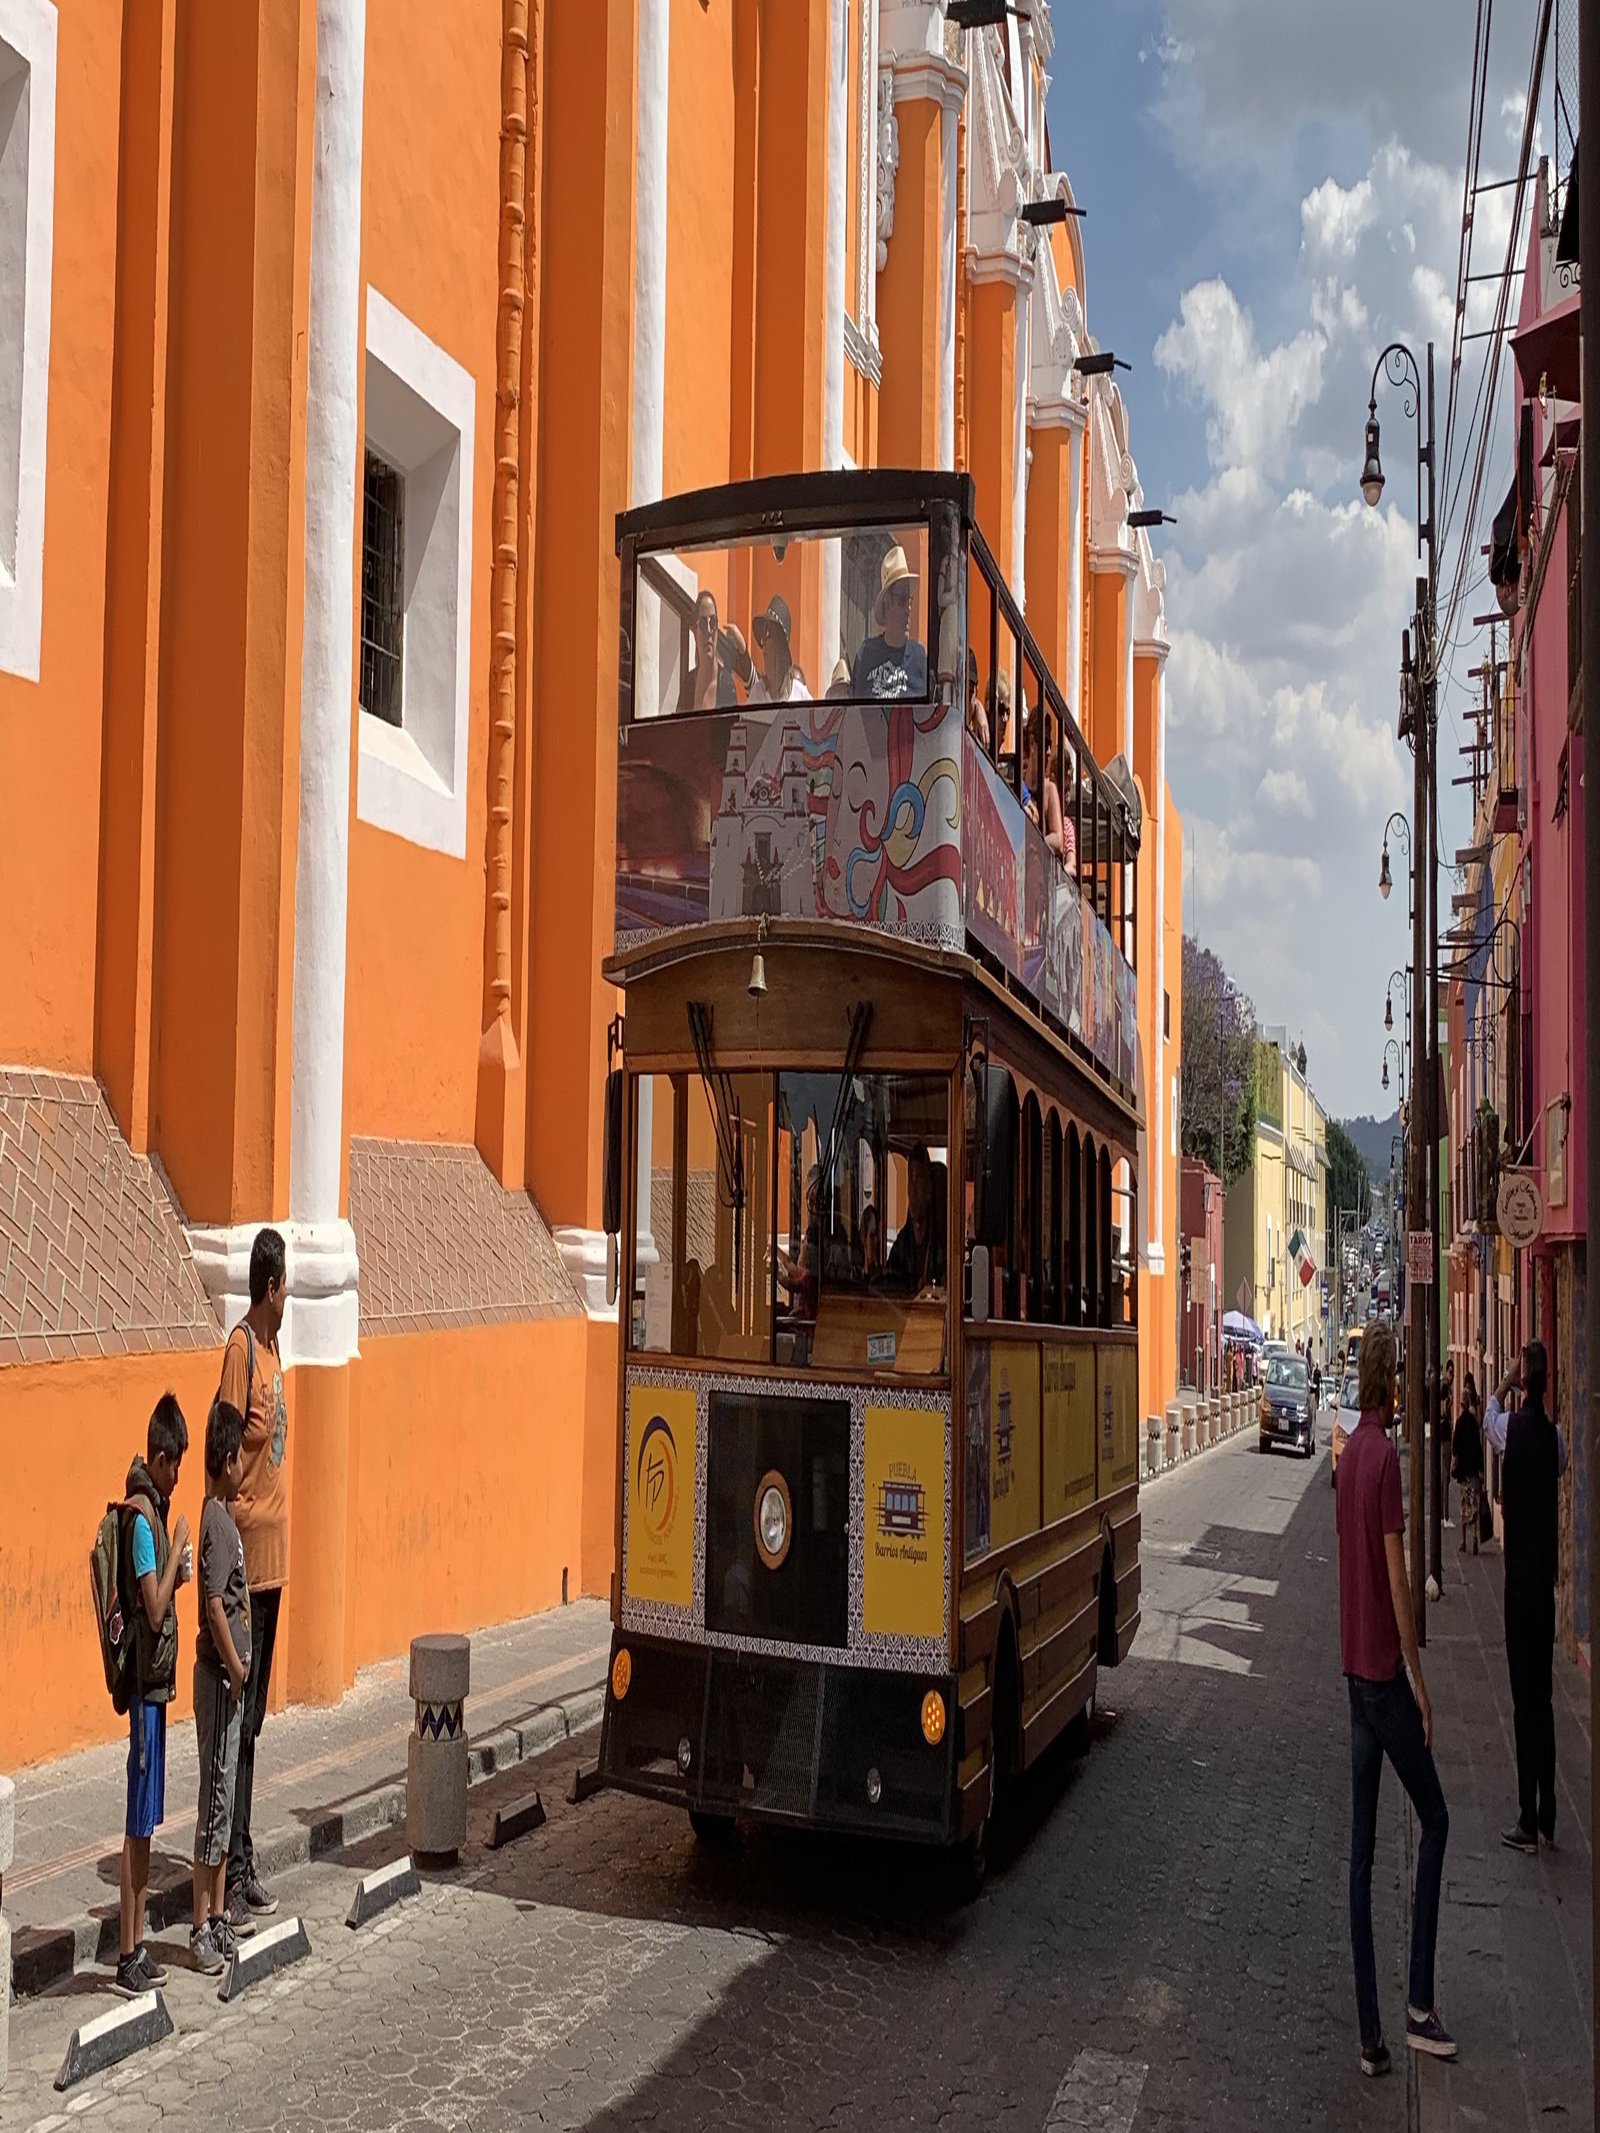 In der malerischen Stadt Puebla gab es für die Studierenden viel zu entdecken. Ein alter Straßenbus gehörte zu den vielen kleinen Sehenswürdigkeiten dazu. Foto: Tobias Specker